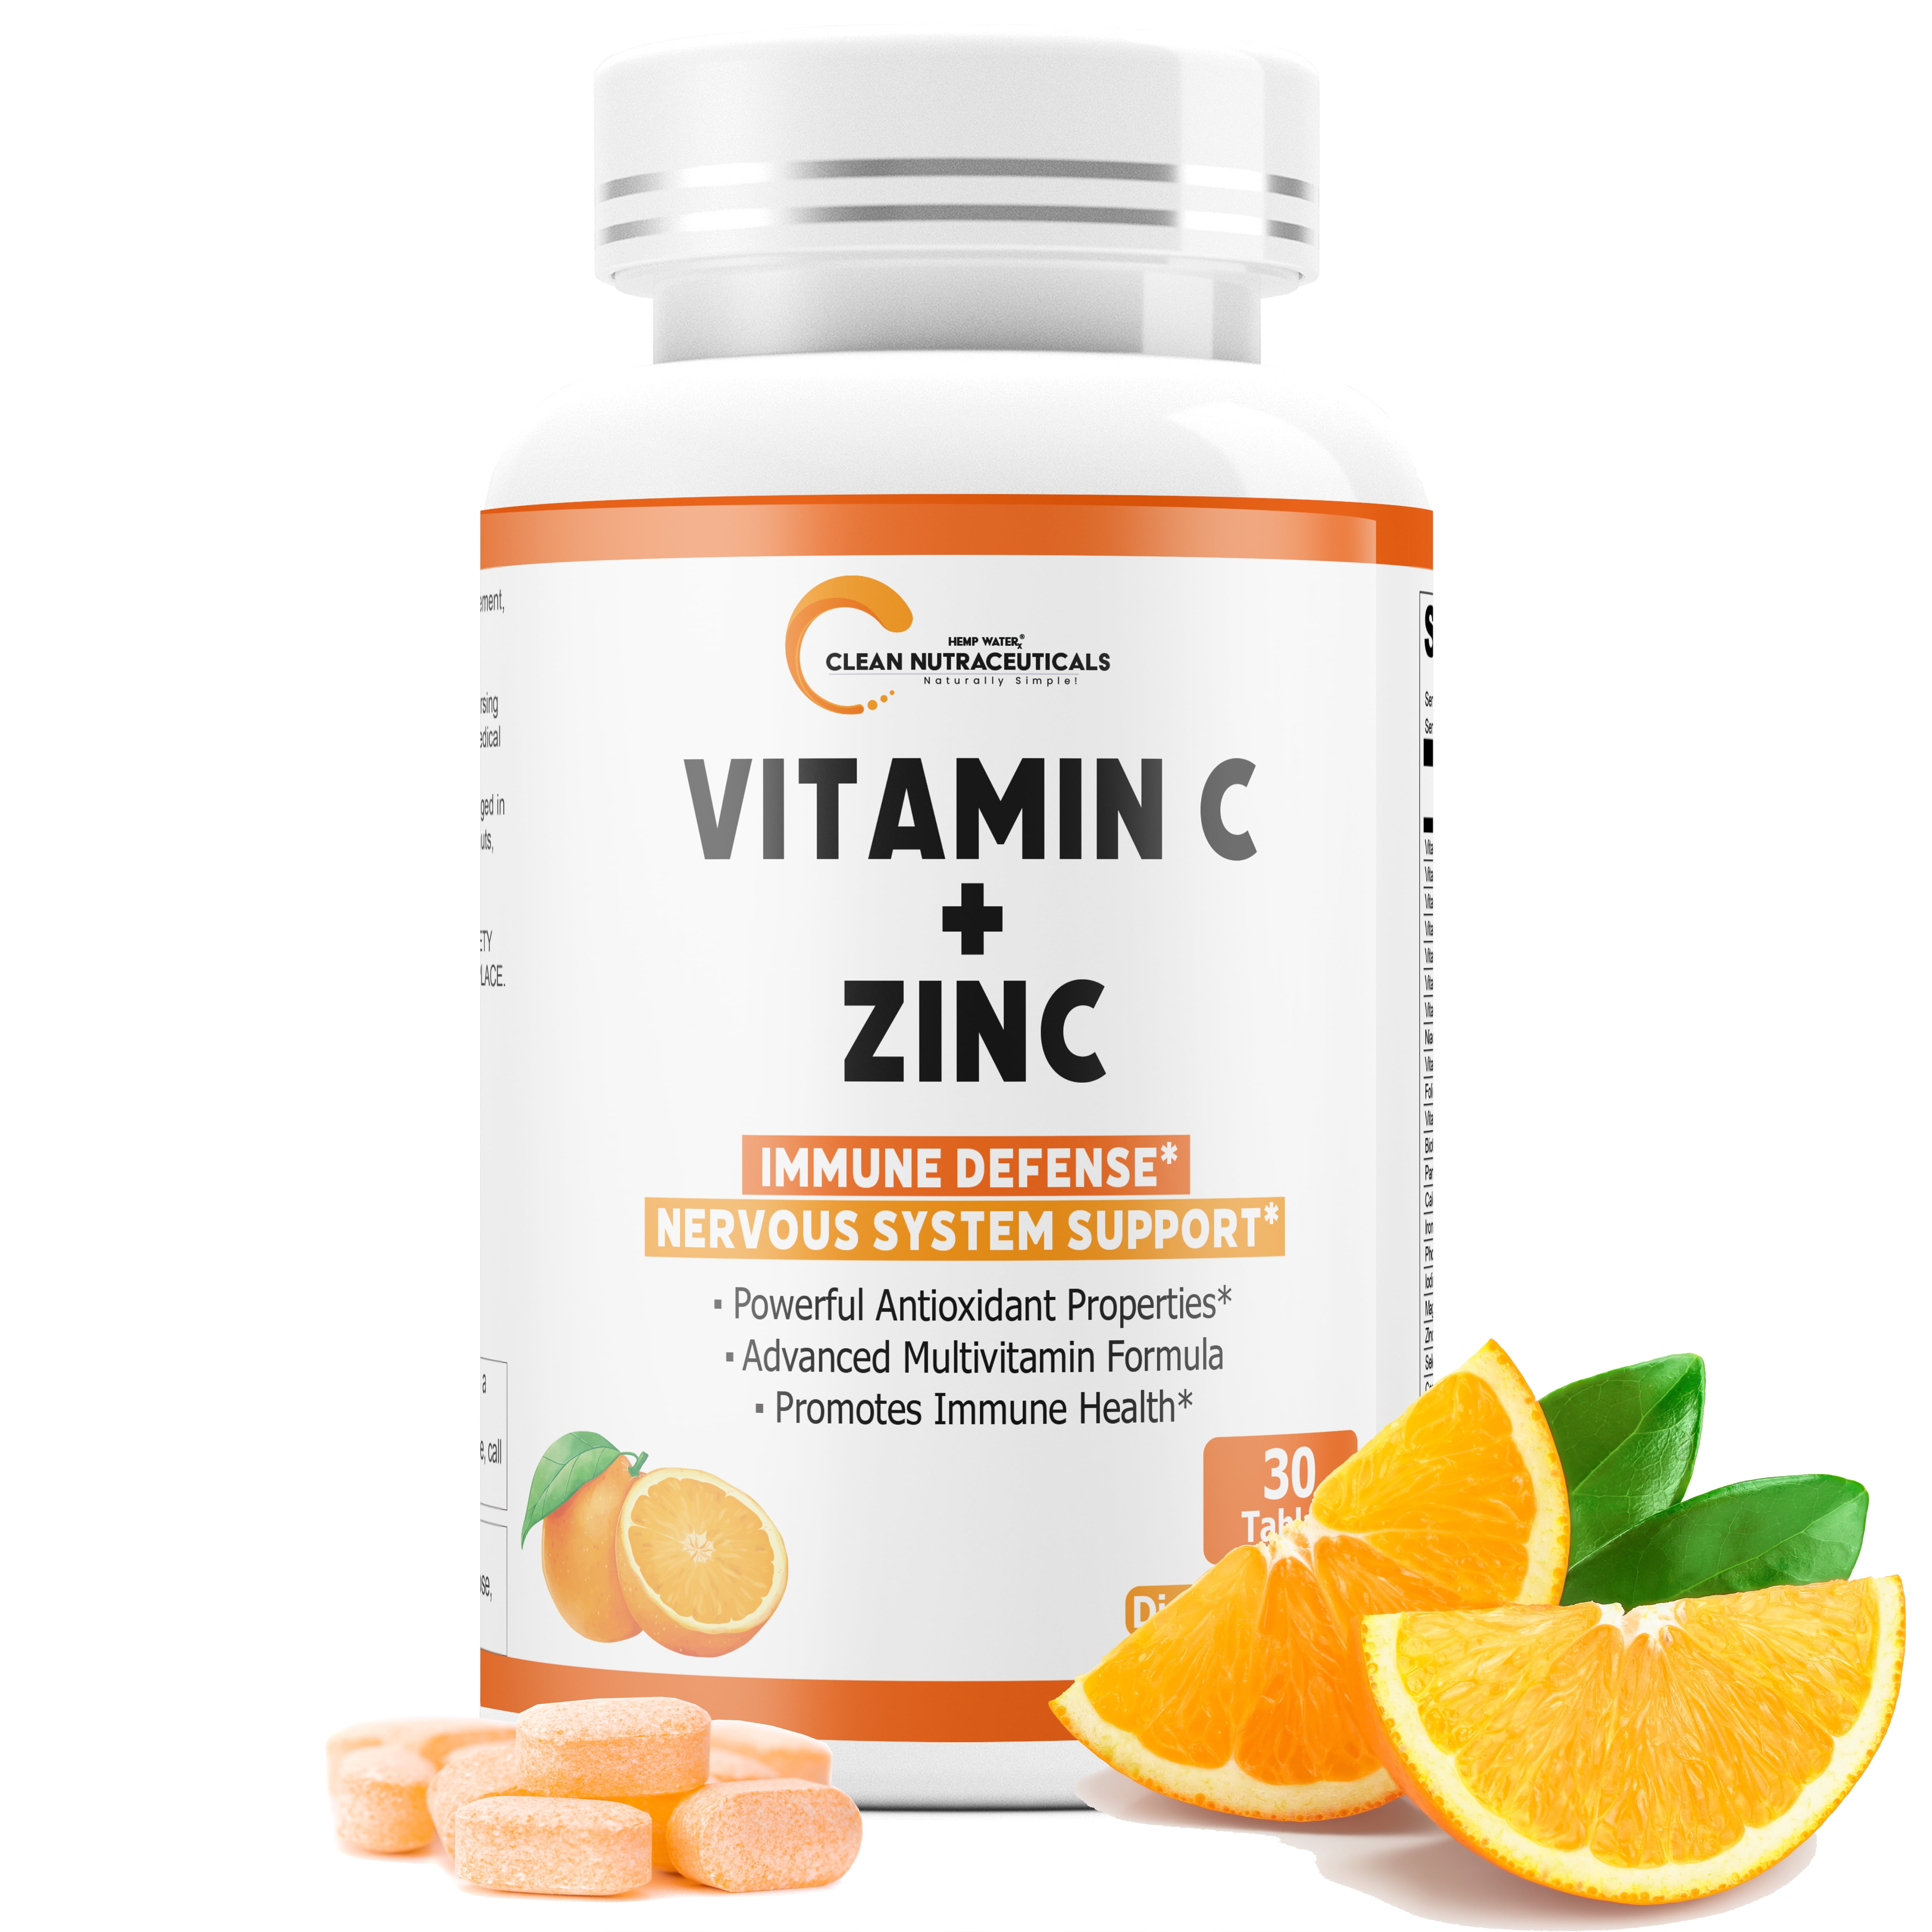 Zinc vitamin will help dick stay hard